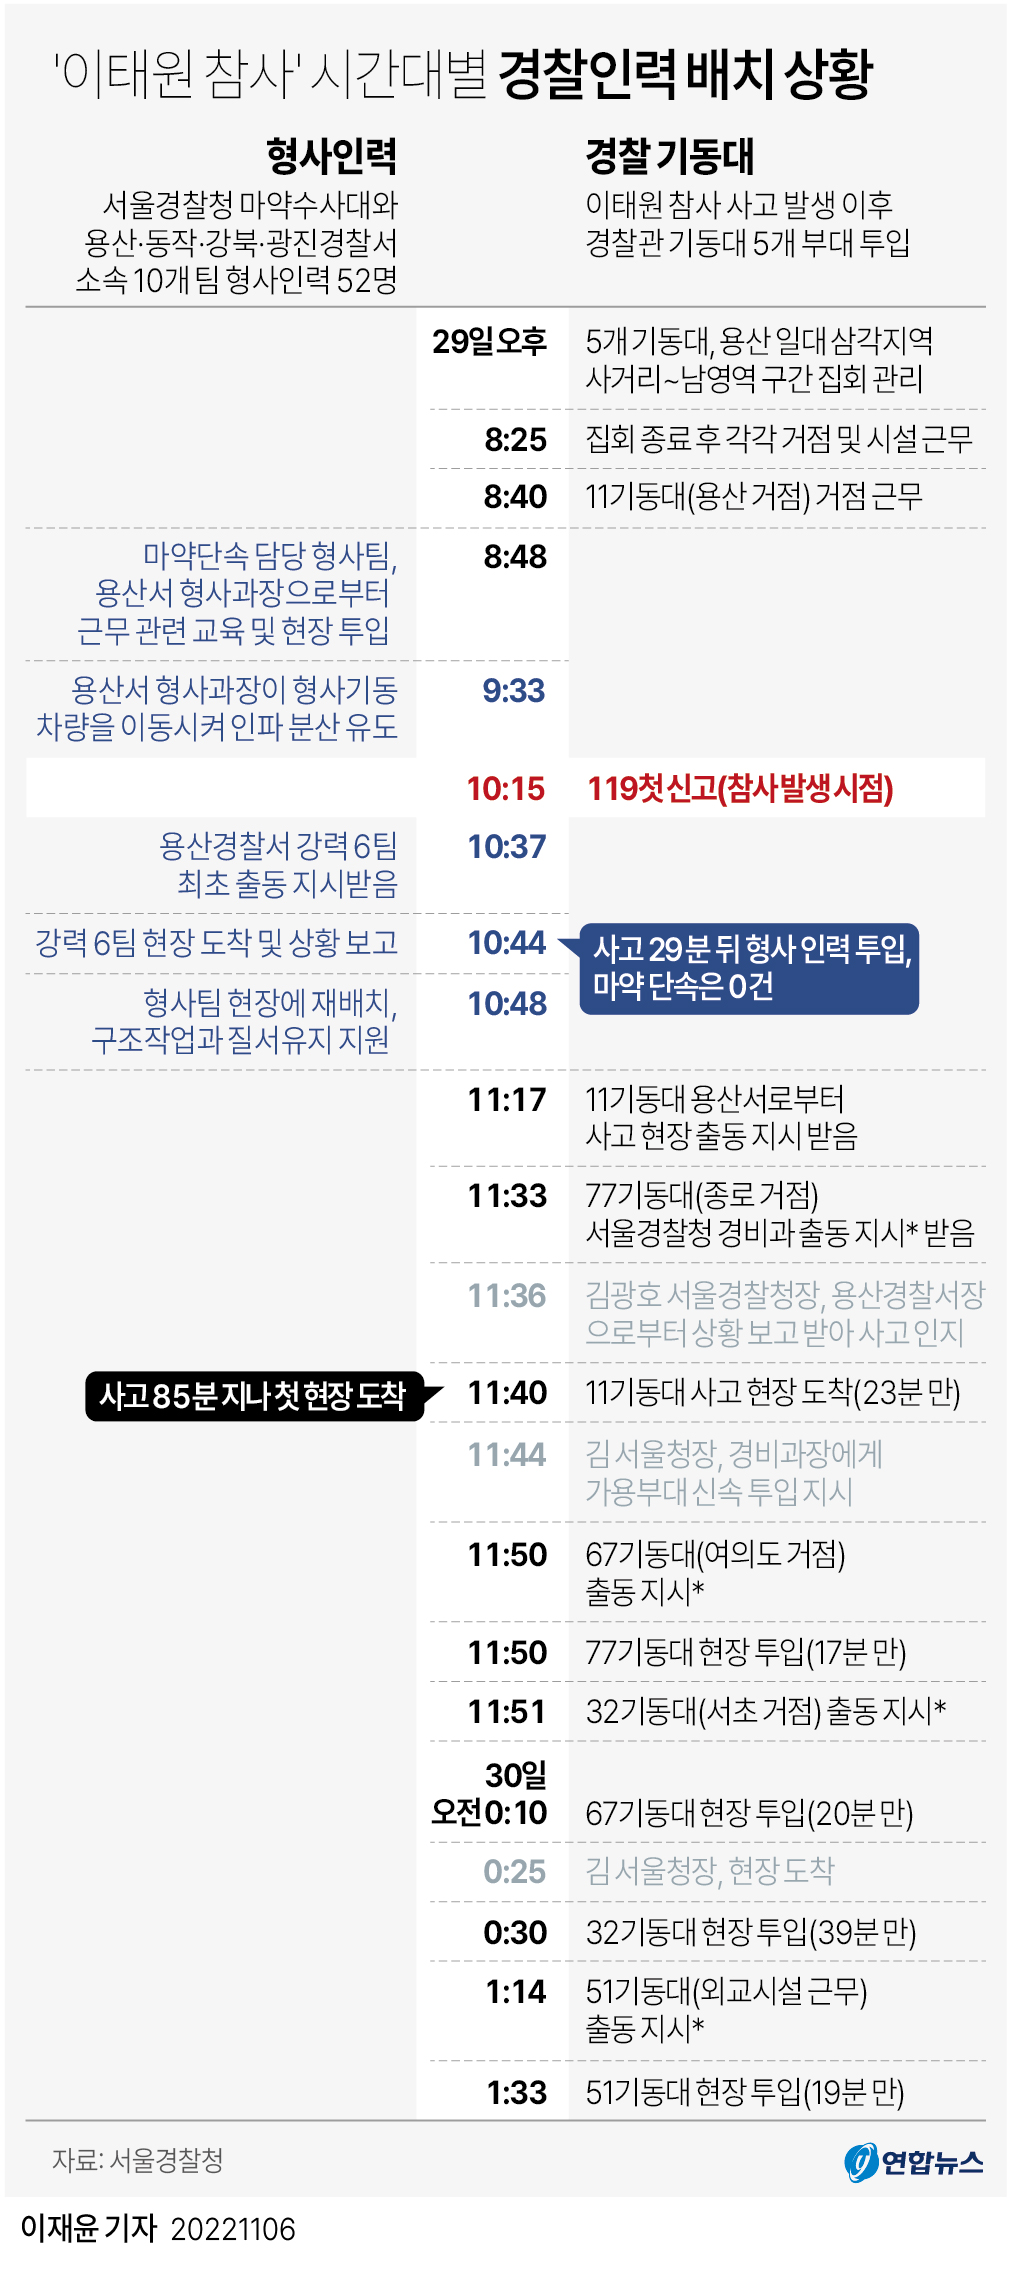 [그래픽] '이태원 참사' 시간대별 경찰인력 배치 상황